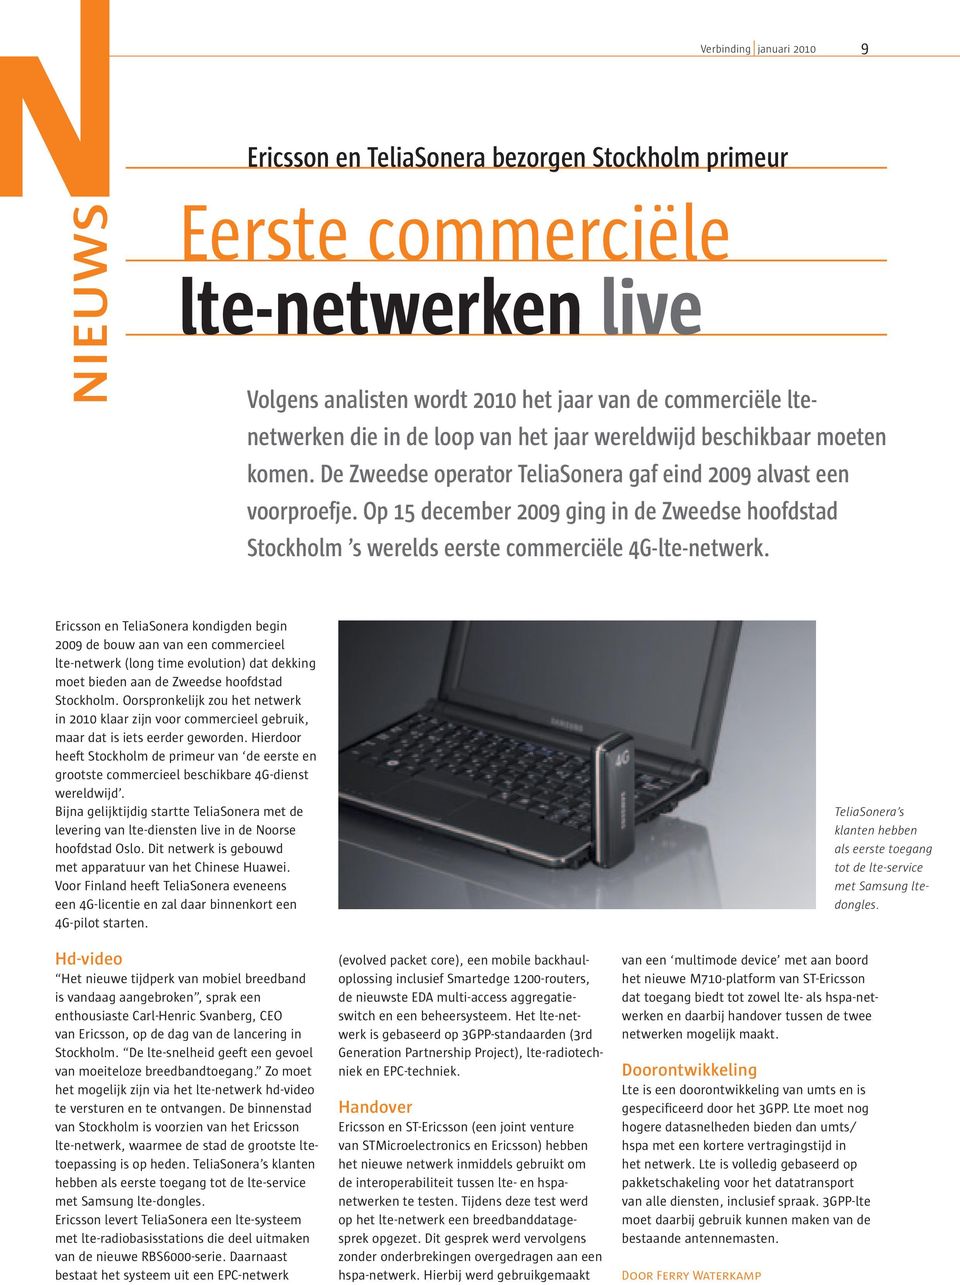 Op 15 december 2009 ging in de Zweedse hoofdstad Stockholm s werelds eerste commerciële 4G-lte-netwerk.